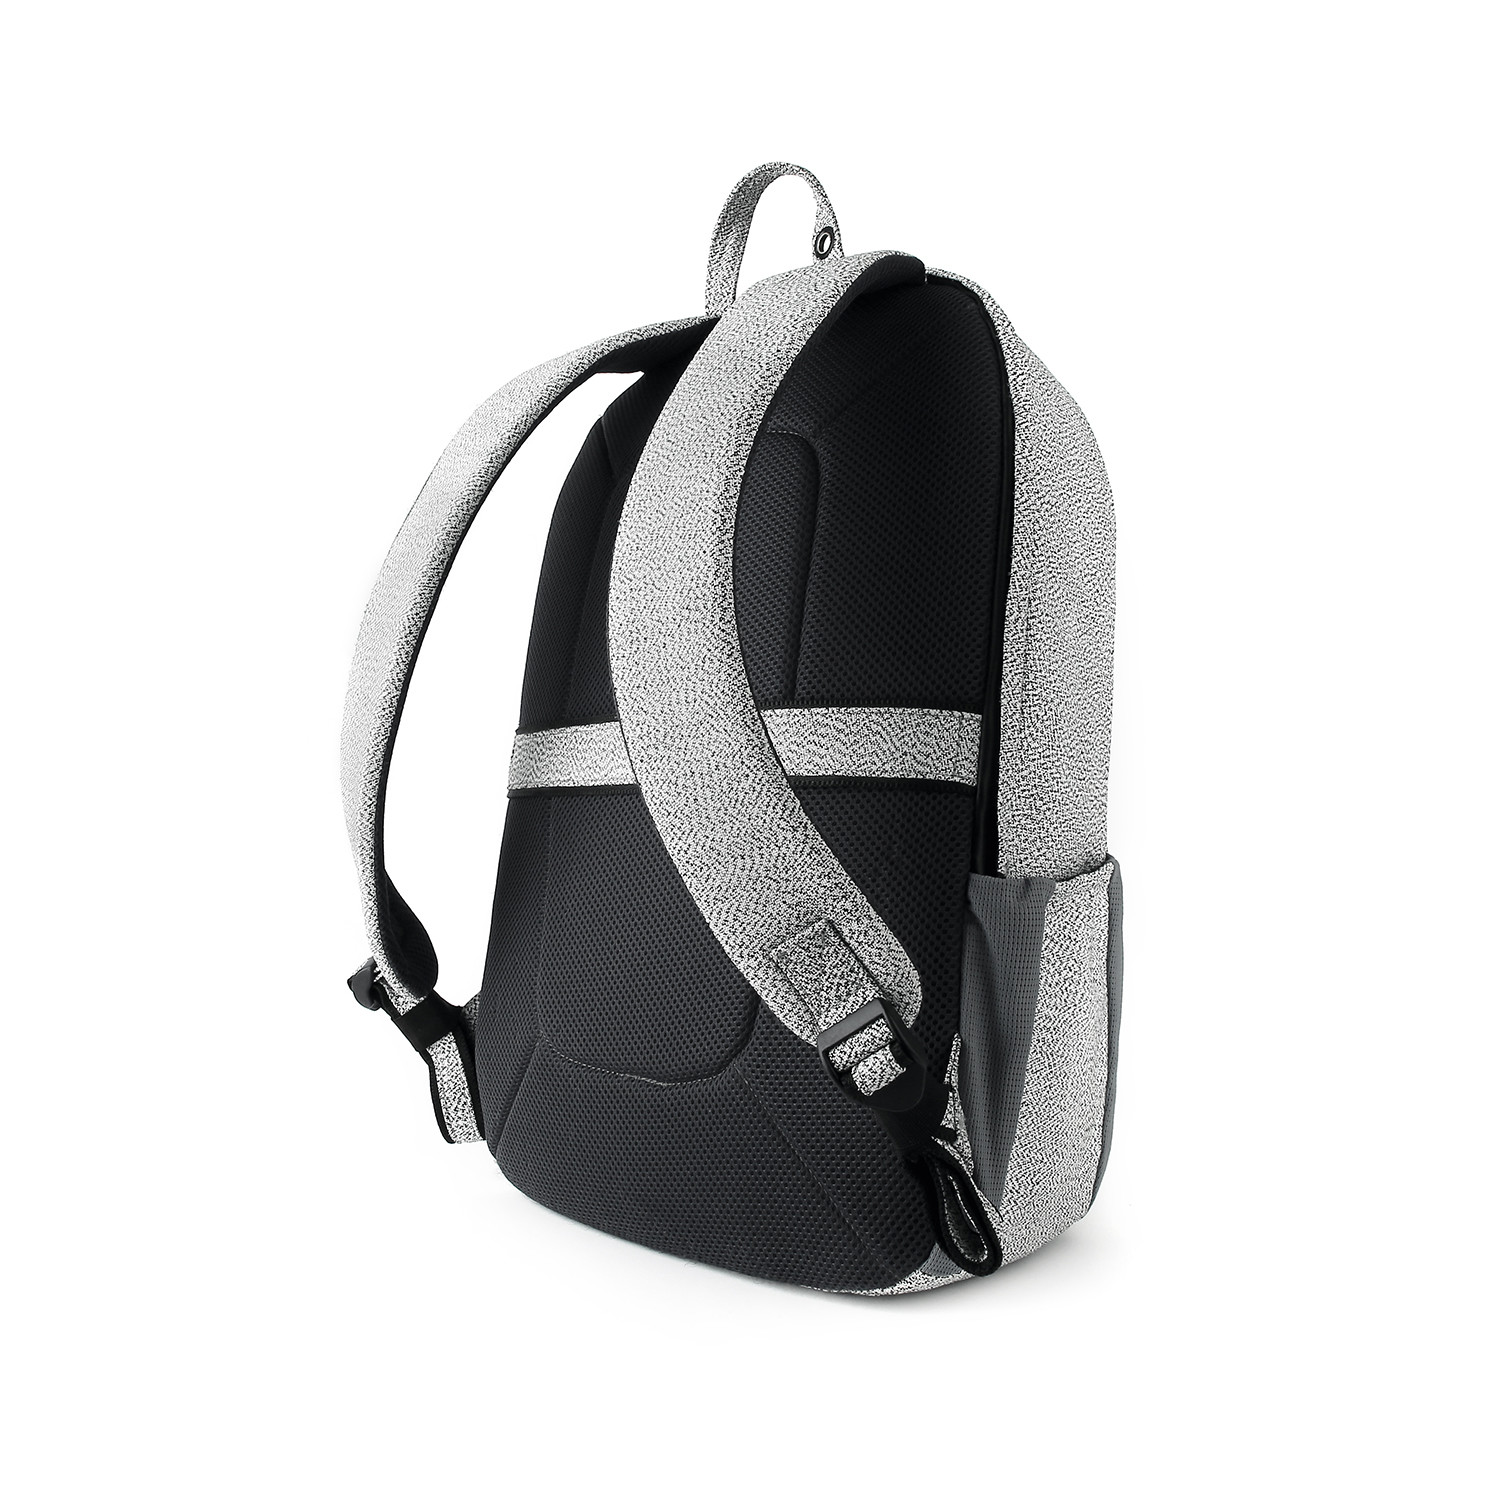 Backpack // Light Gray - METODO - Touch of Modern